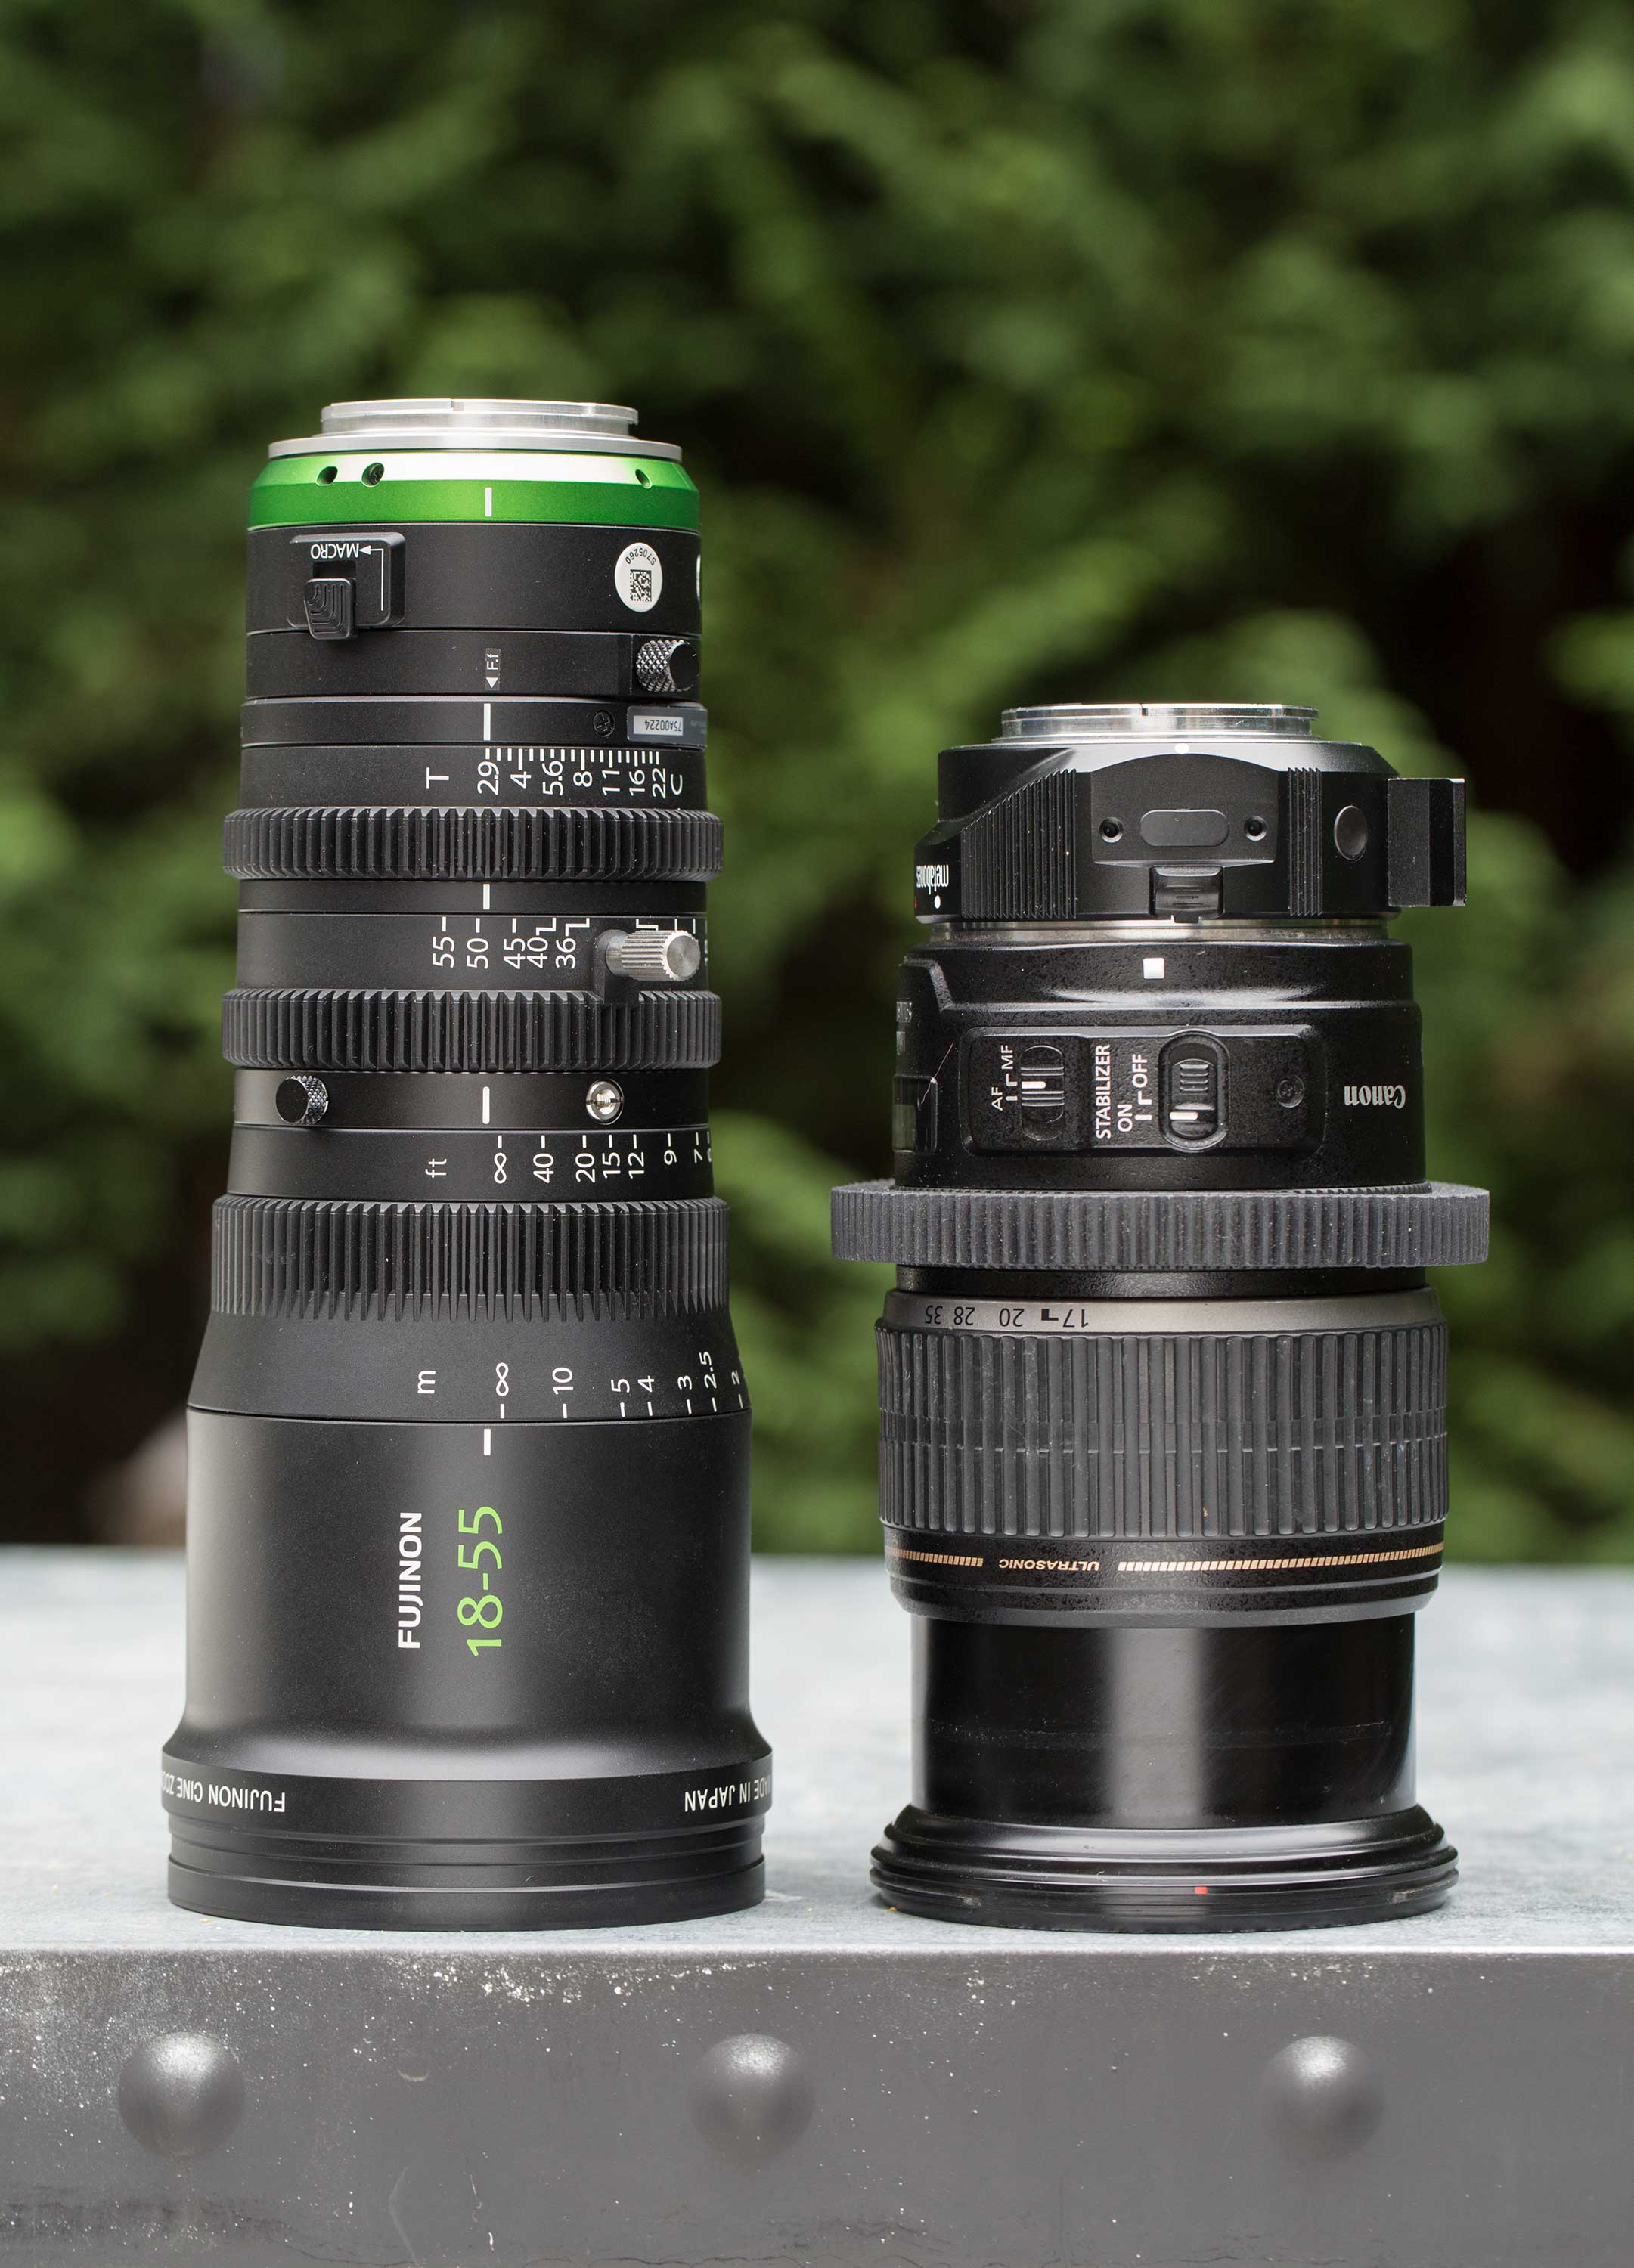 MK 18-55 vs Canon EFS 17-55